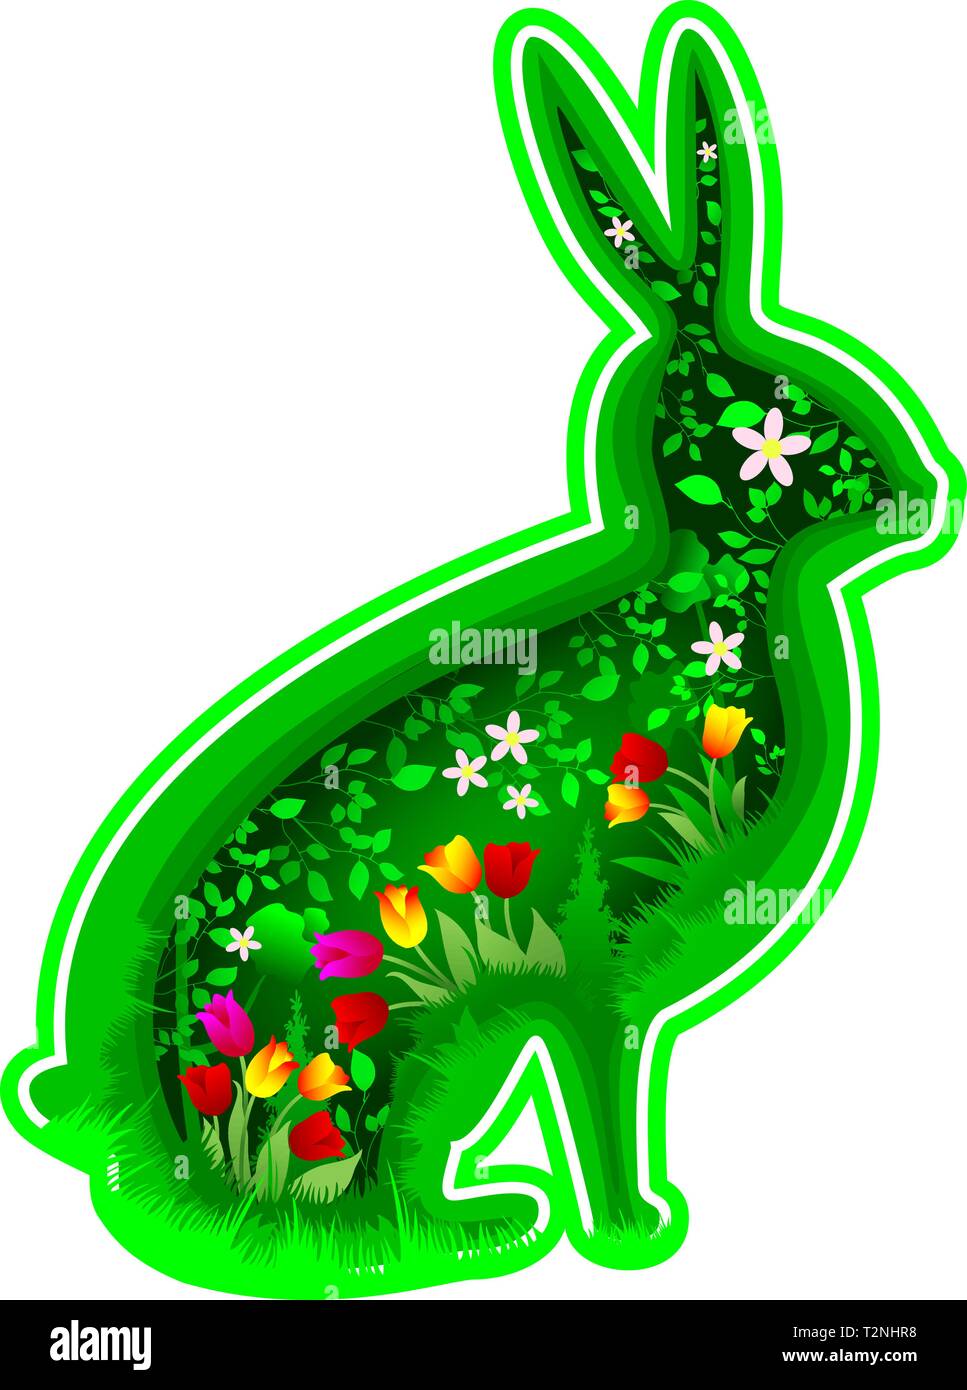 Silhouette lapin stylisé. Feuilles et fleurs dans le contexte de la silhouette d'un lièvre lapin. Le concept de l'été, le printemps, ou à Pâques. Illustration de Vecteur